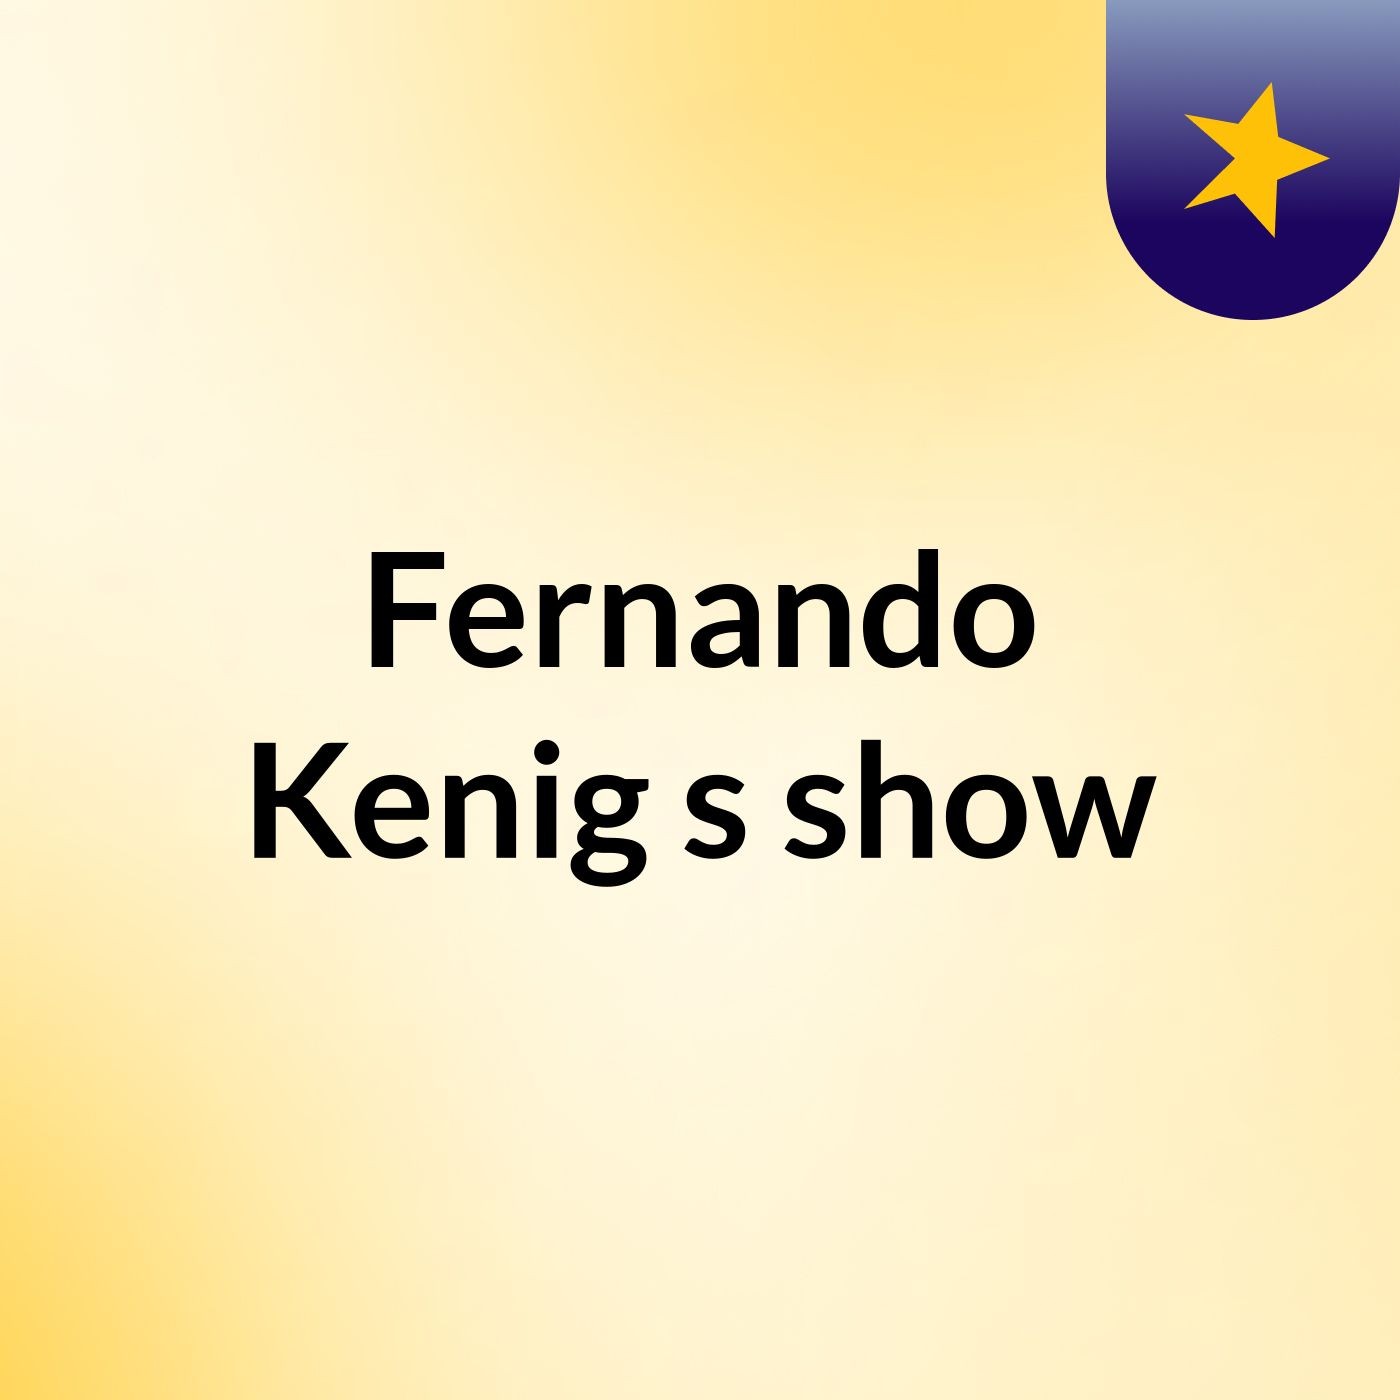 Fernando Kenig's show